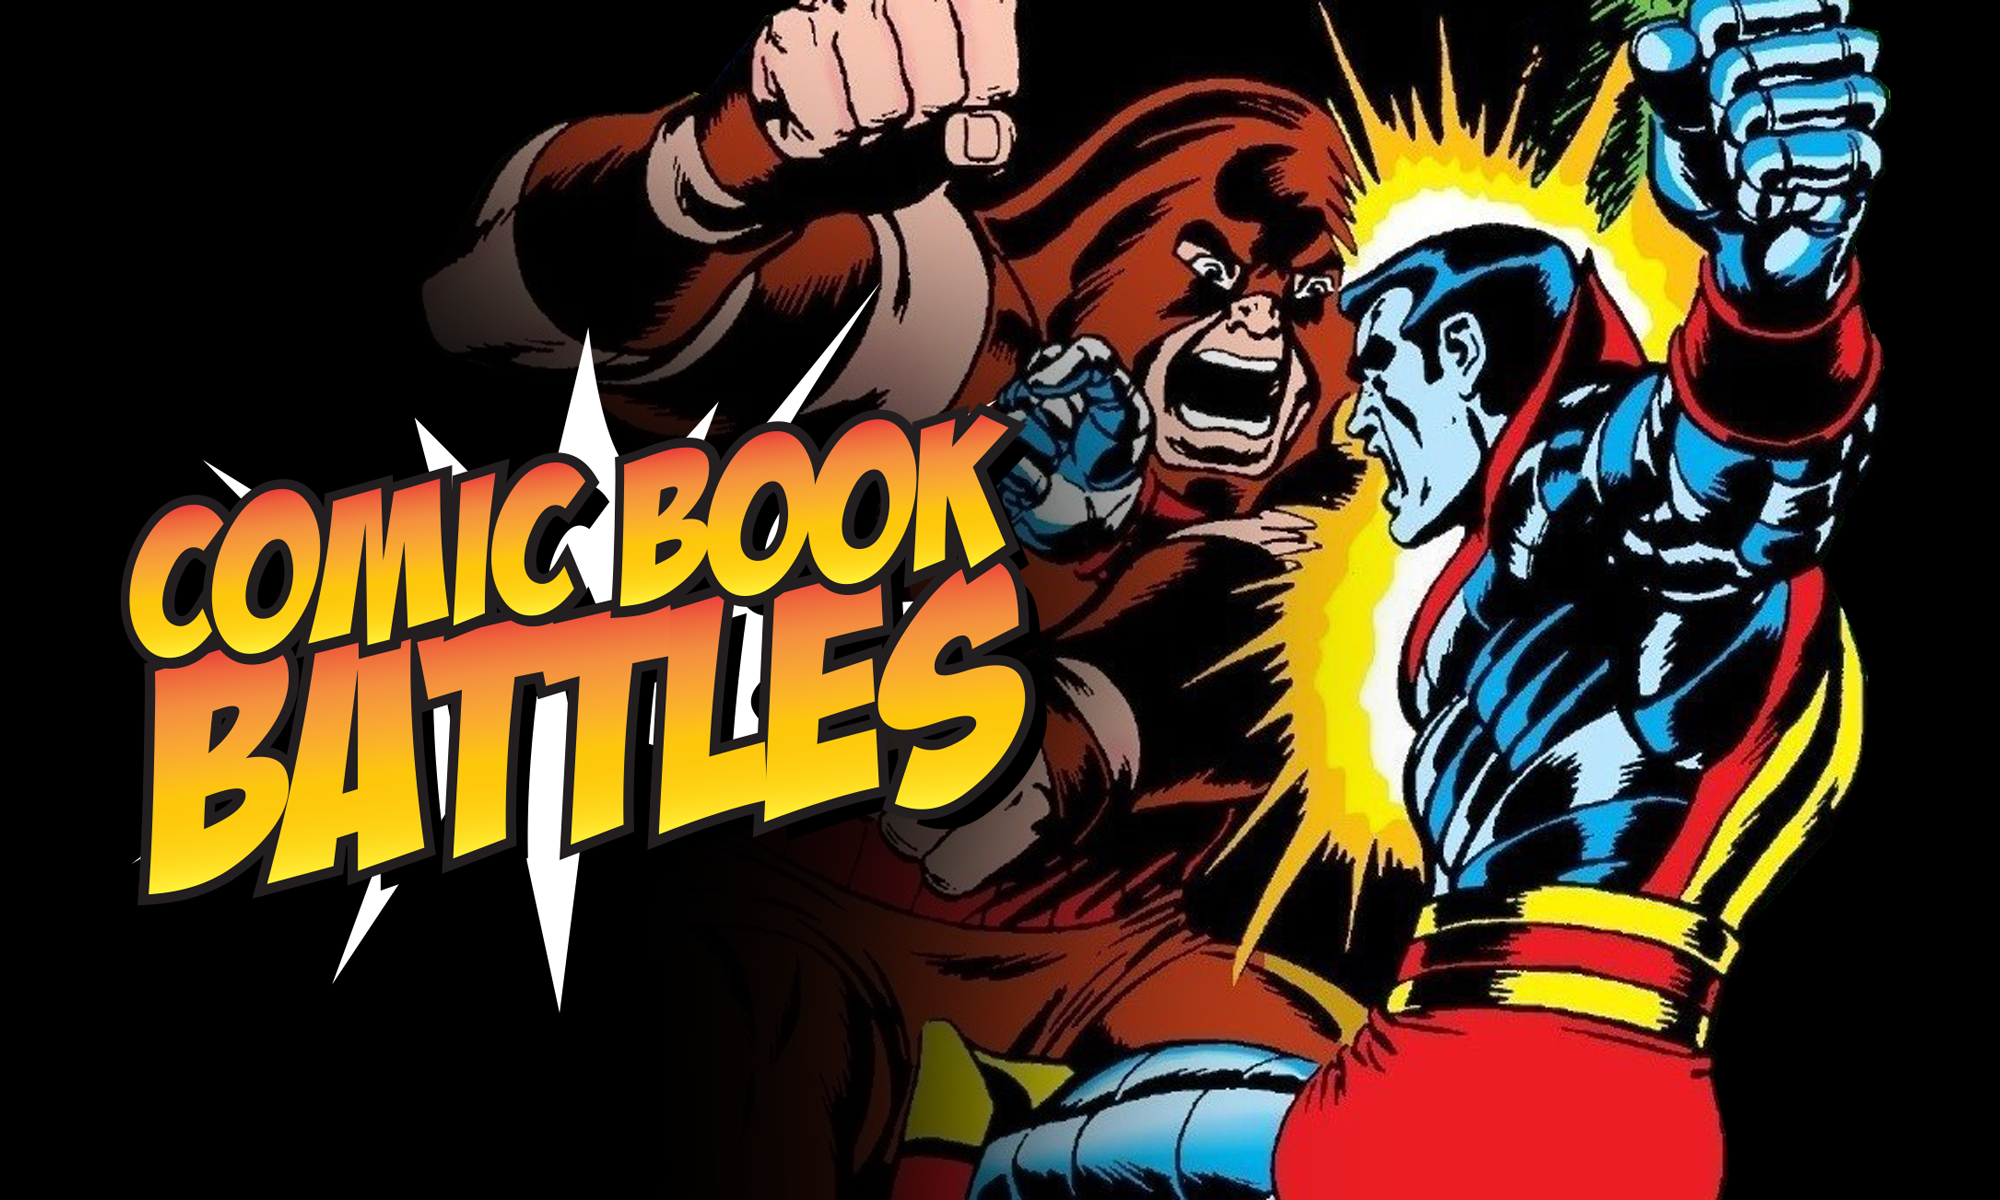 Comic Book Battles